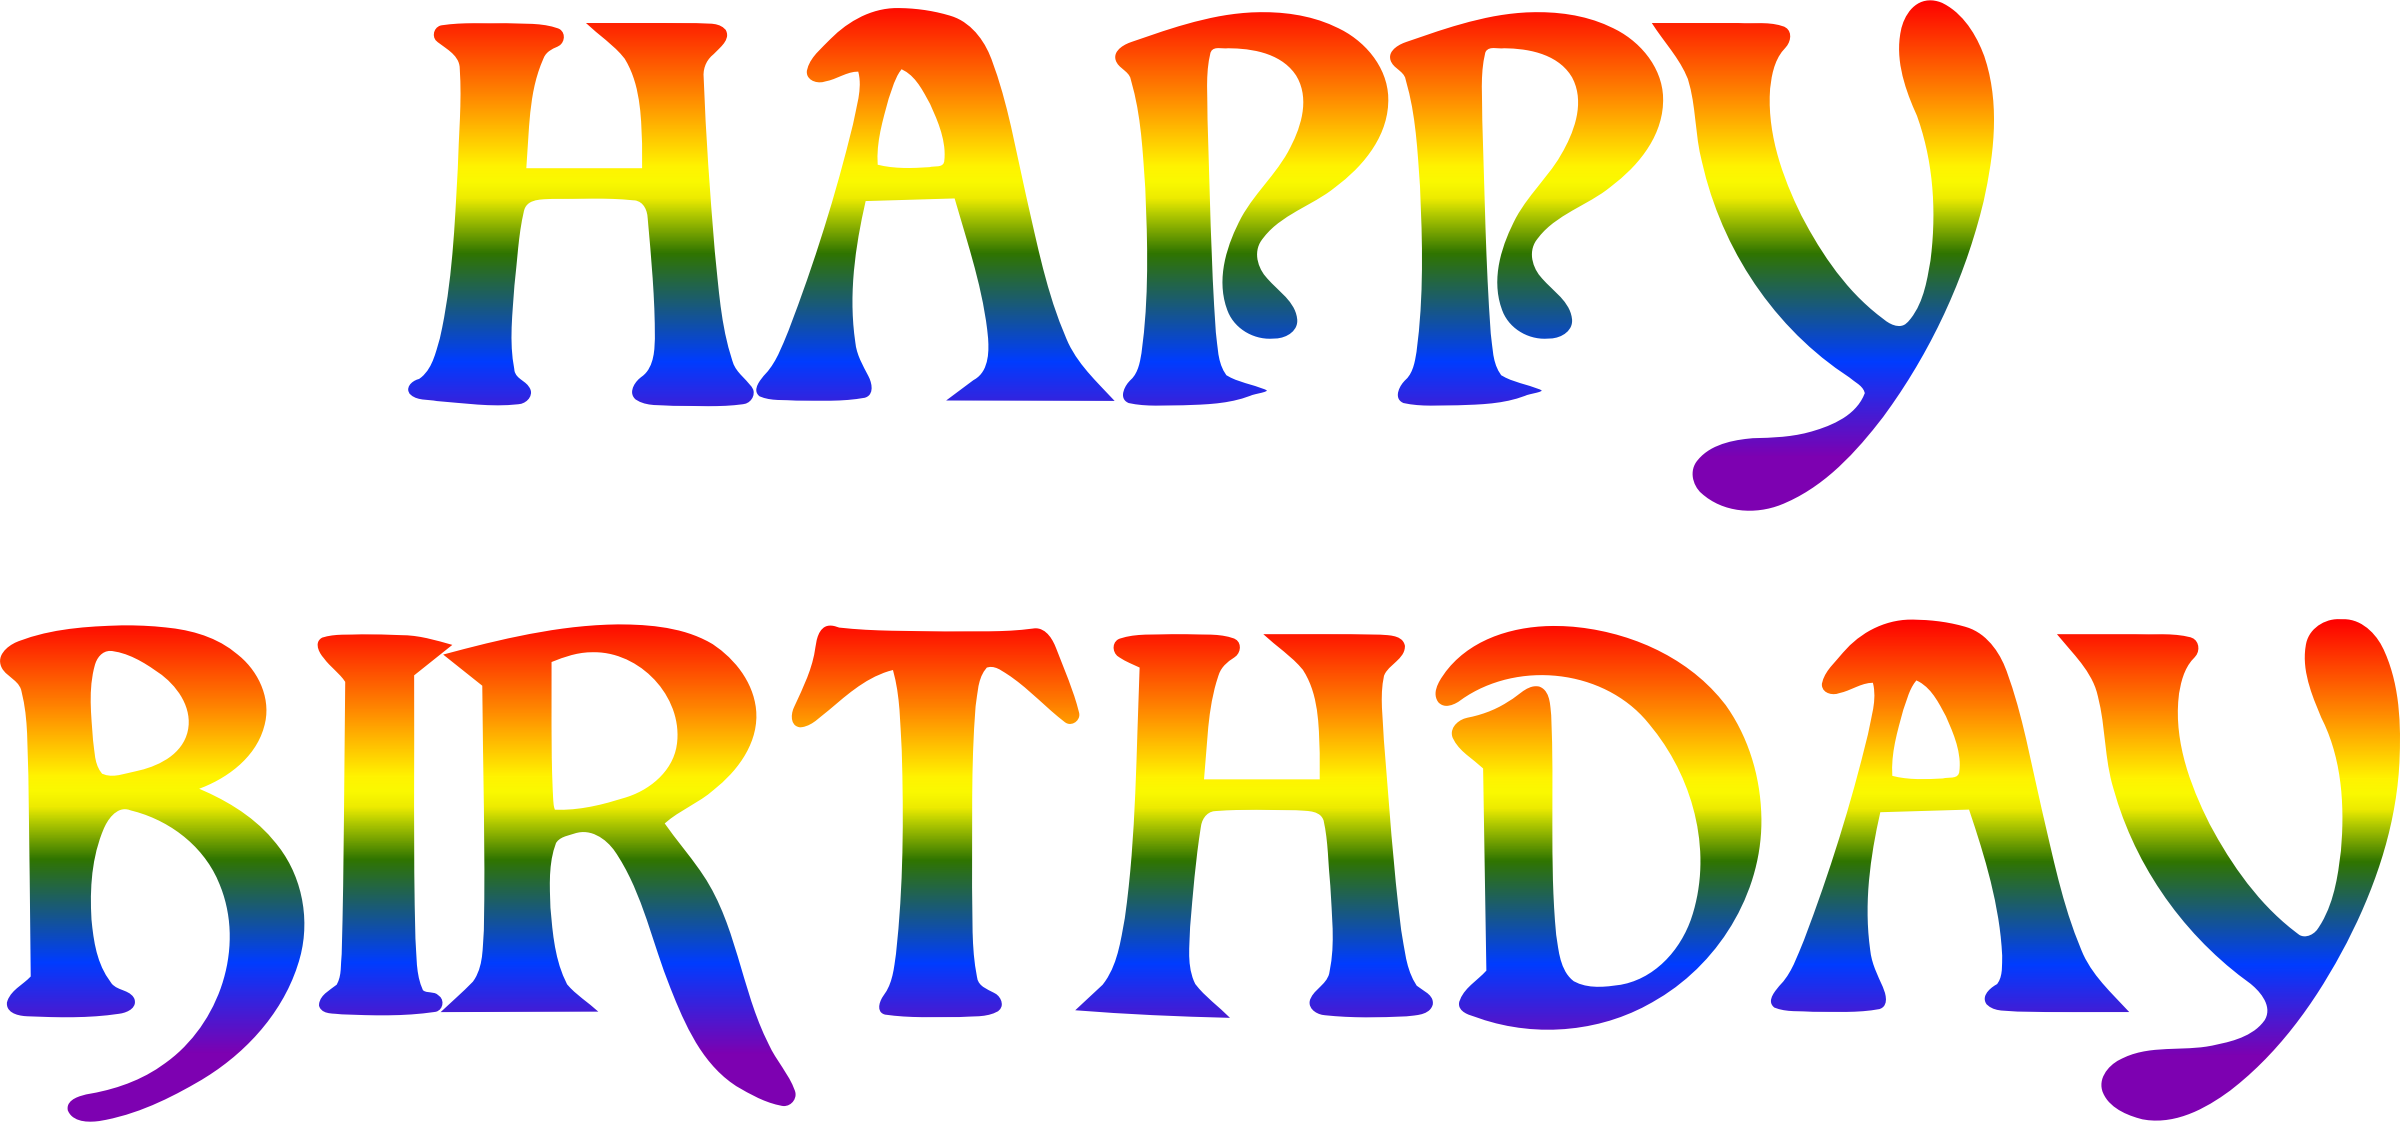 Big Image - Happy Birthday In Rainbow Colors (2400x1122)